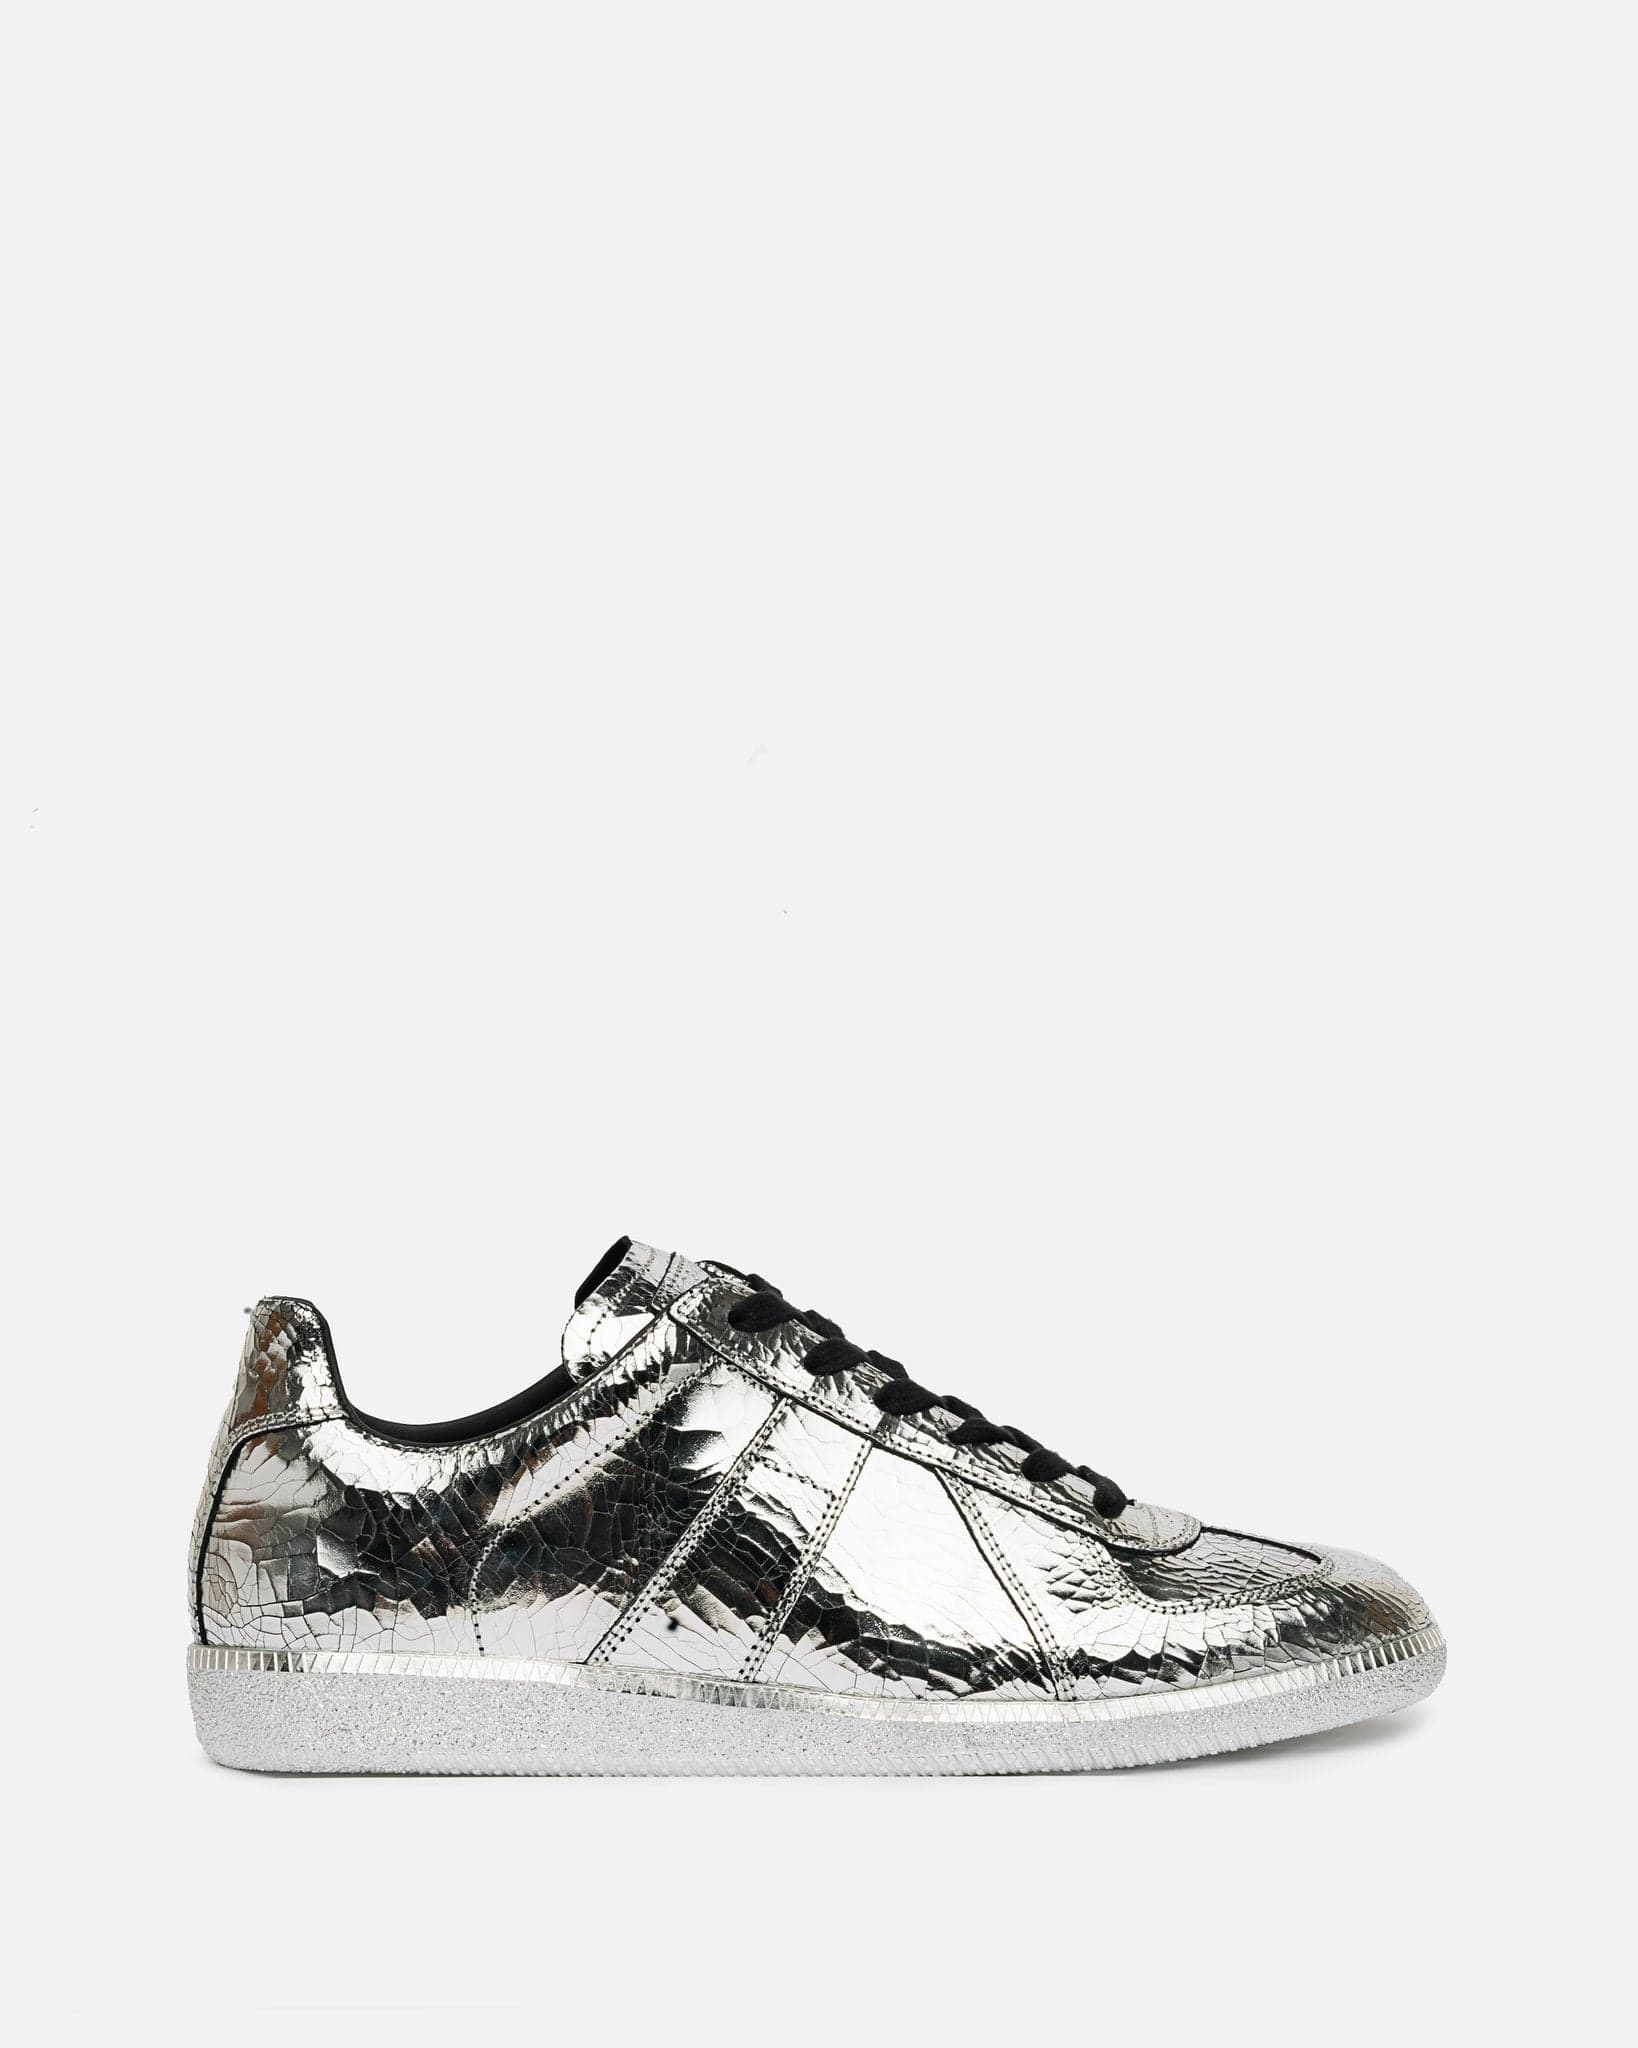 Maison Margiela Men's Sneakers Replica Mirror Sneakers in Silver